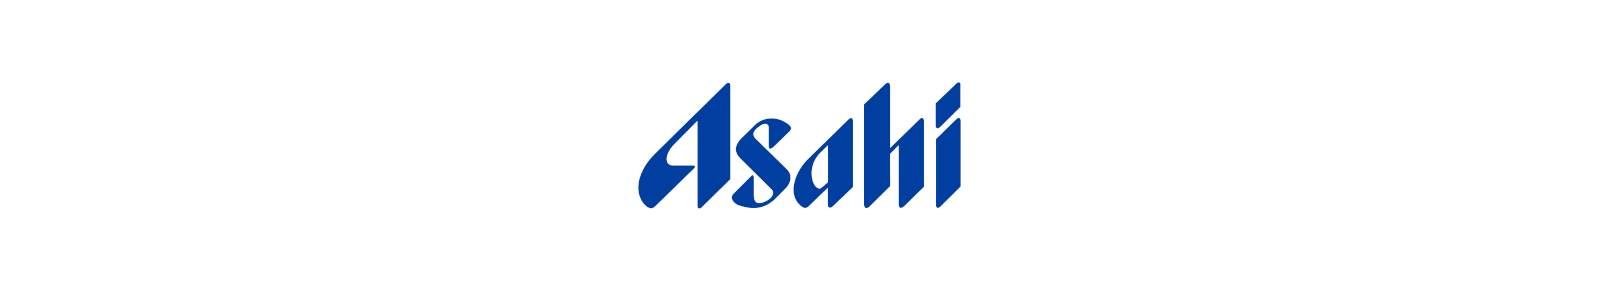 アサヒビール ロゴ